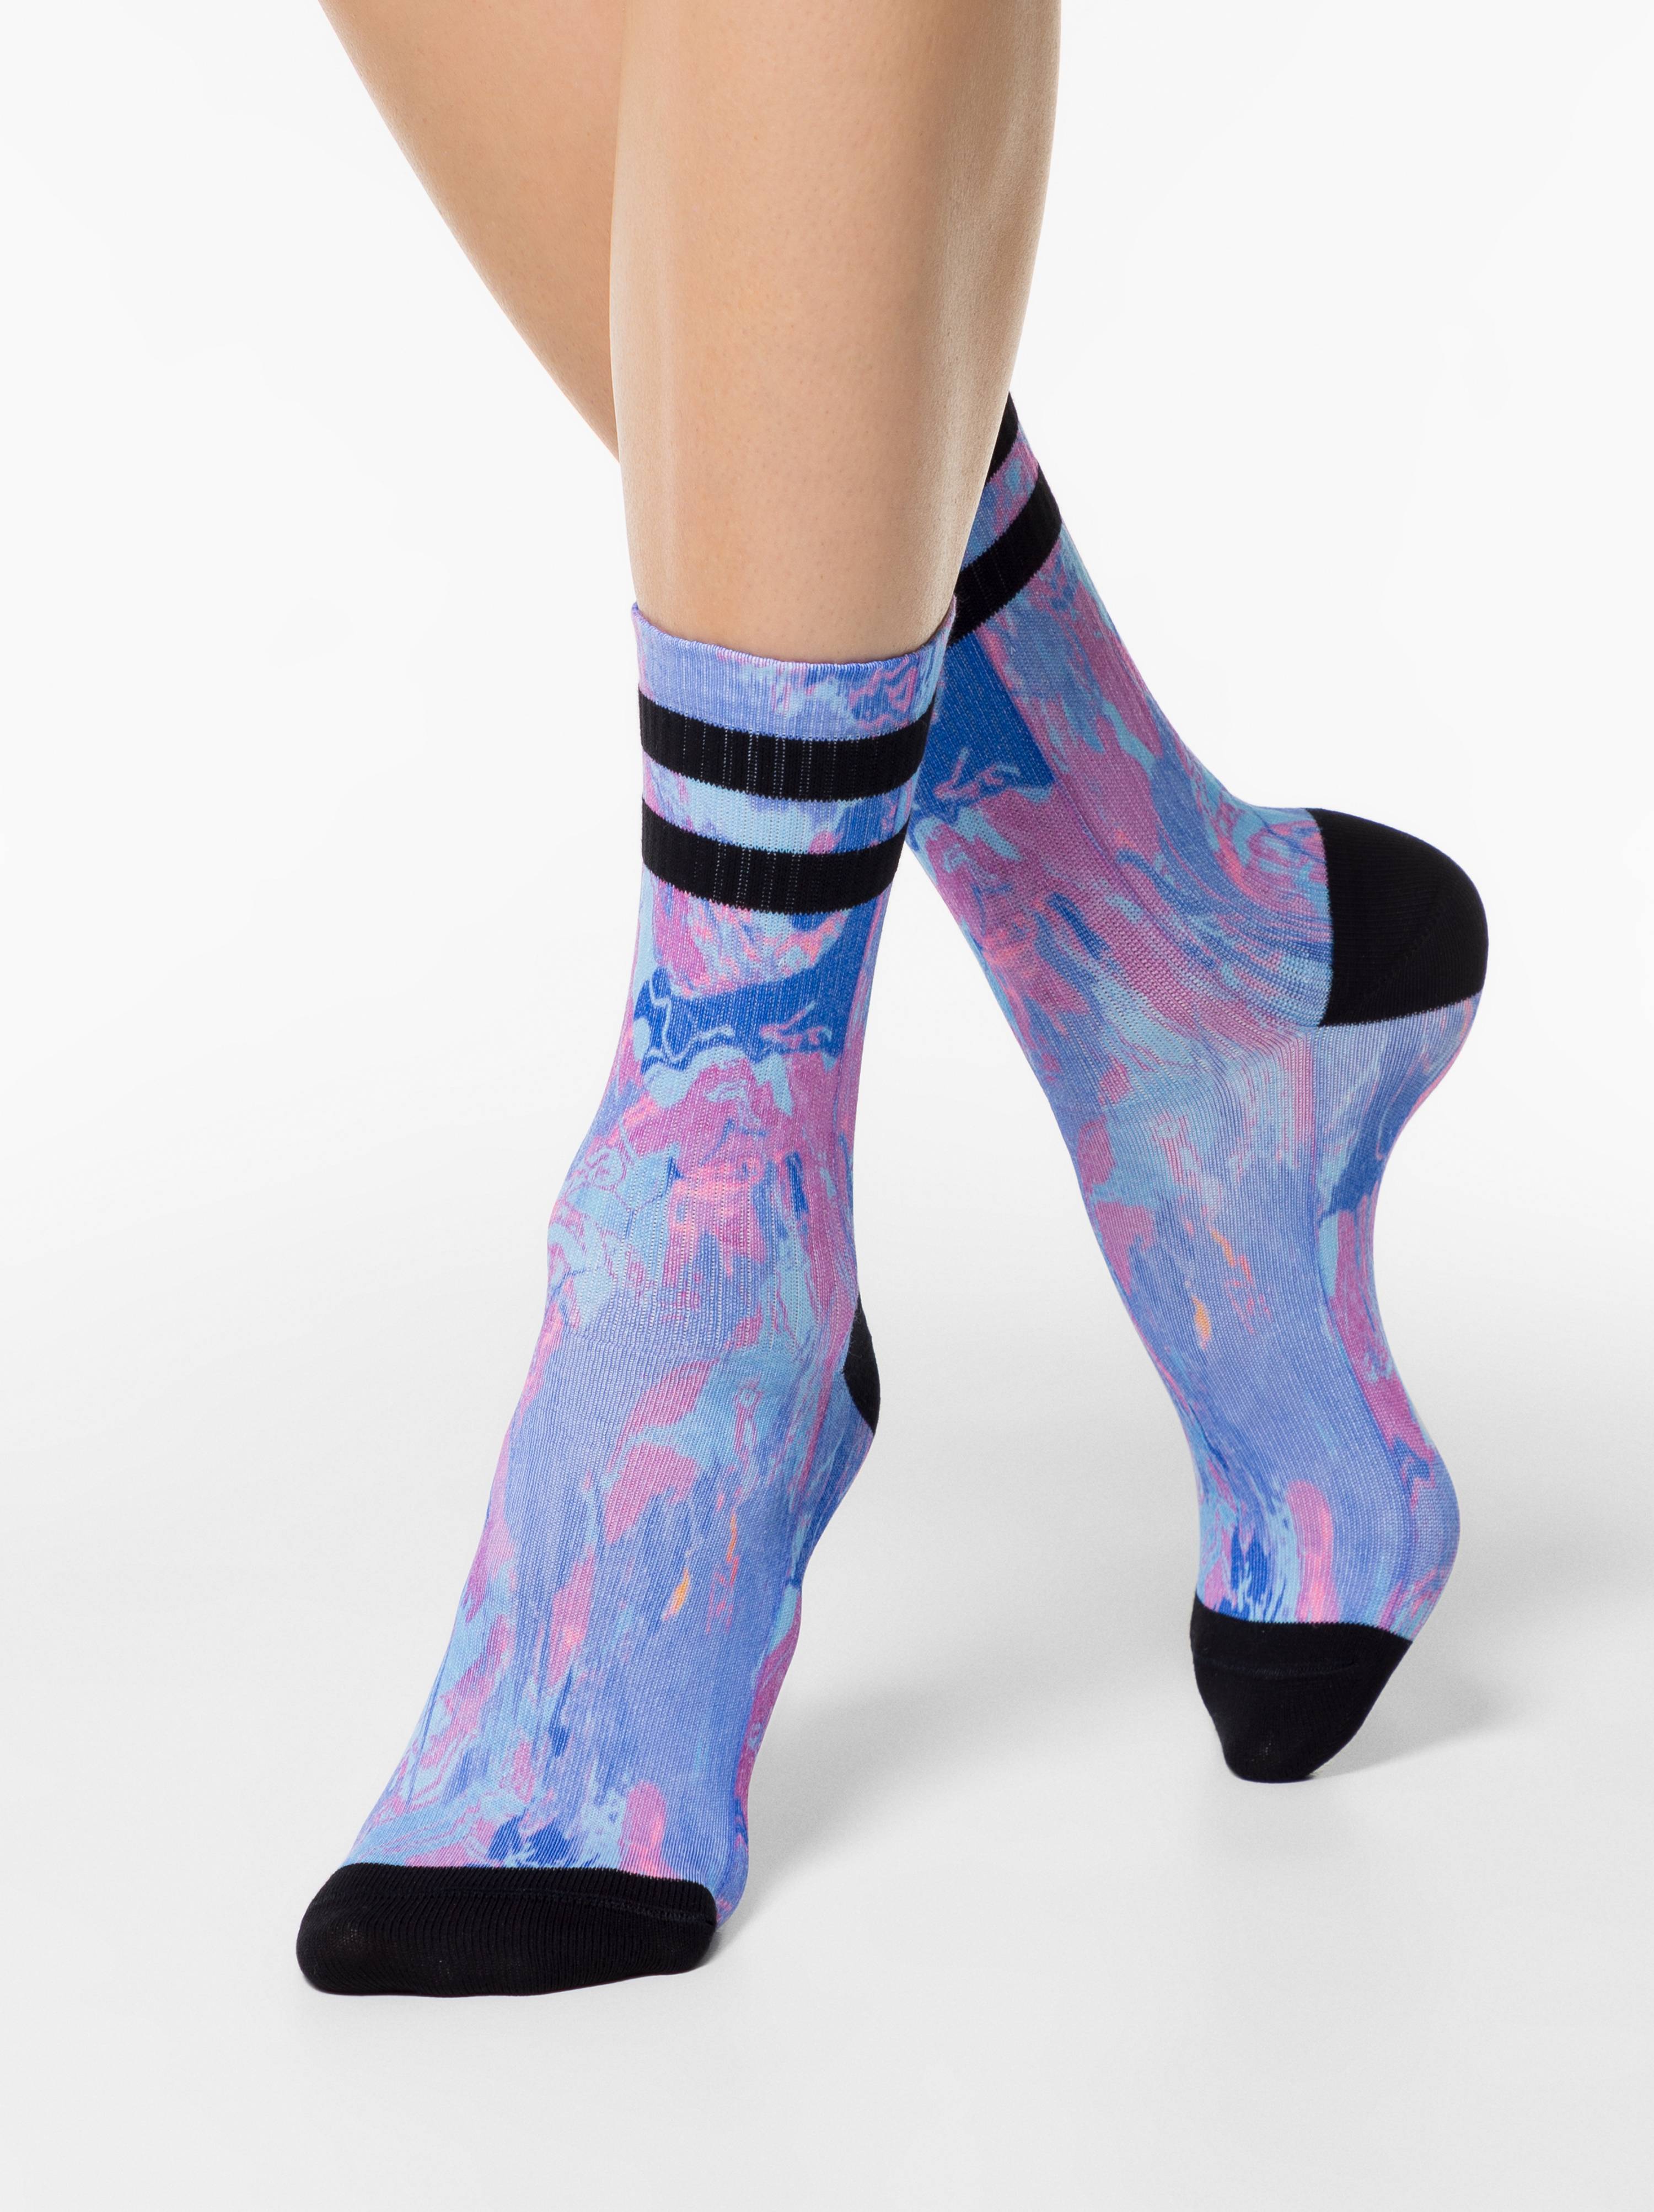 Удлиненные носки женские. Вытянутые носки. Носки жен. Fantasy 20с-12/1сп. Носки под лифчик. Удлиненные носки